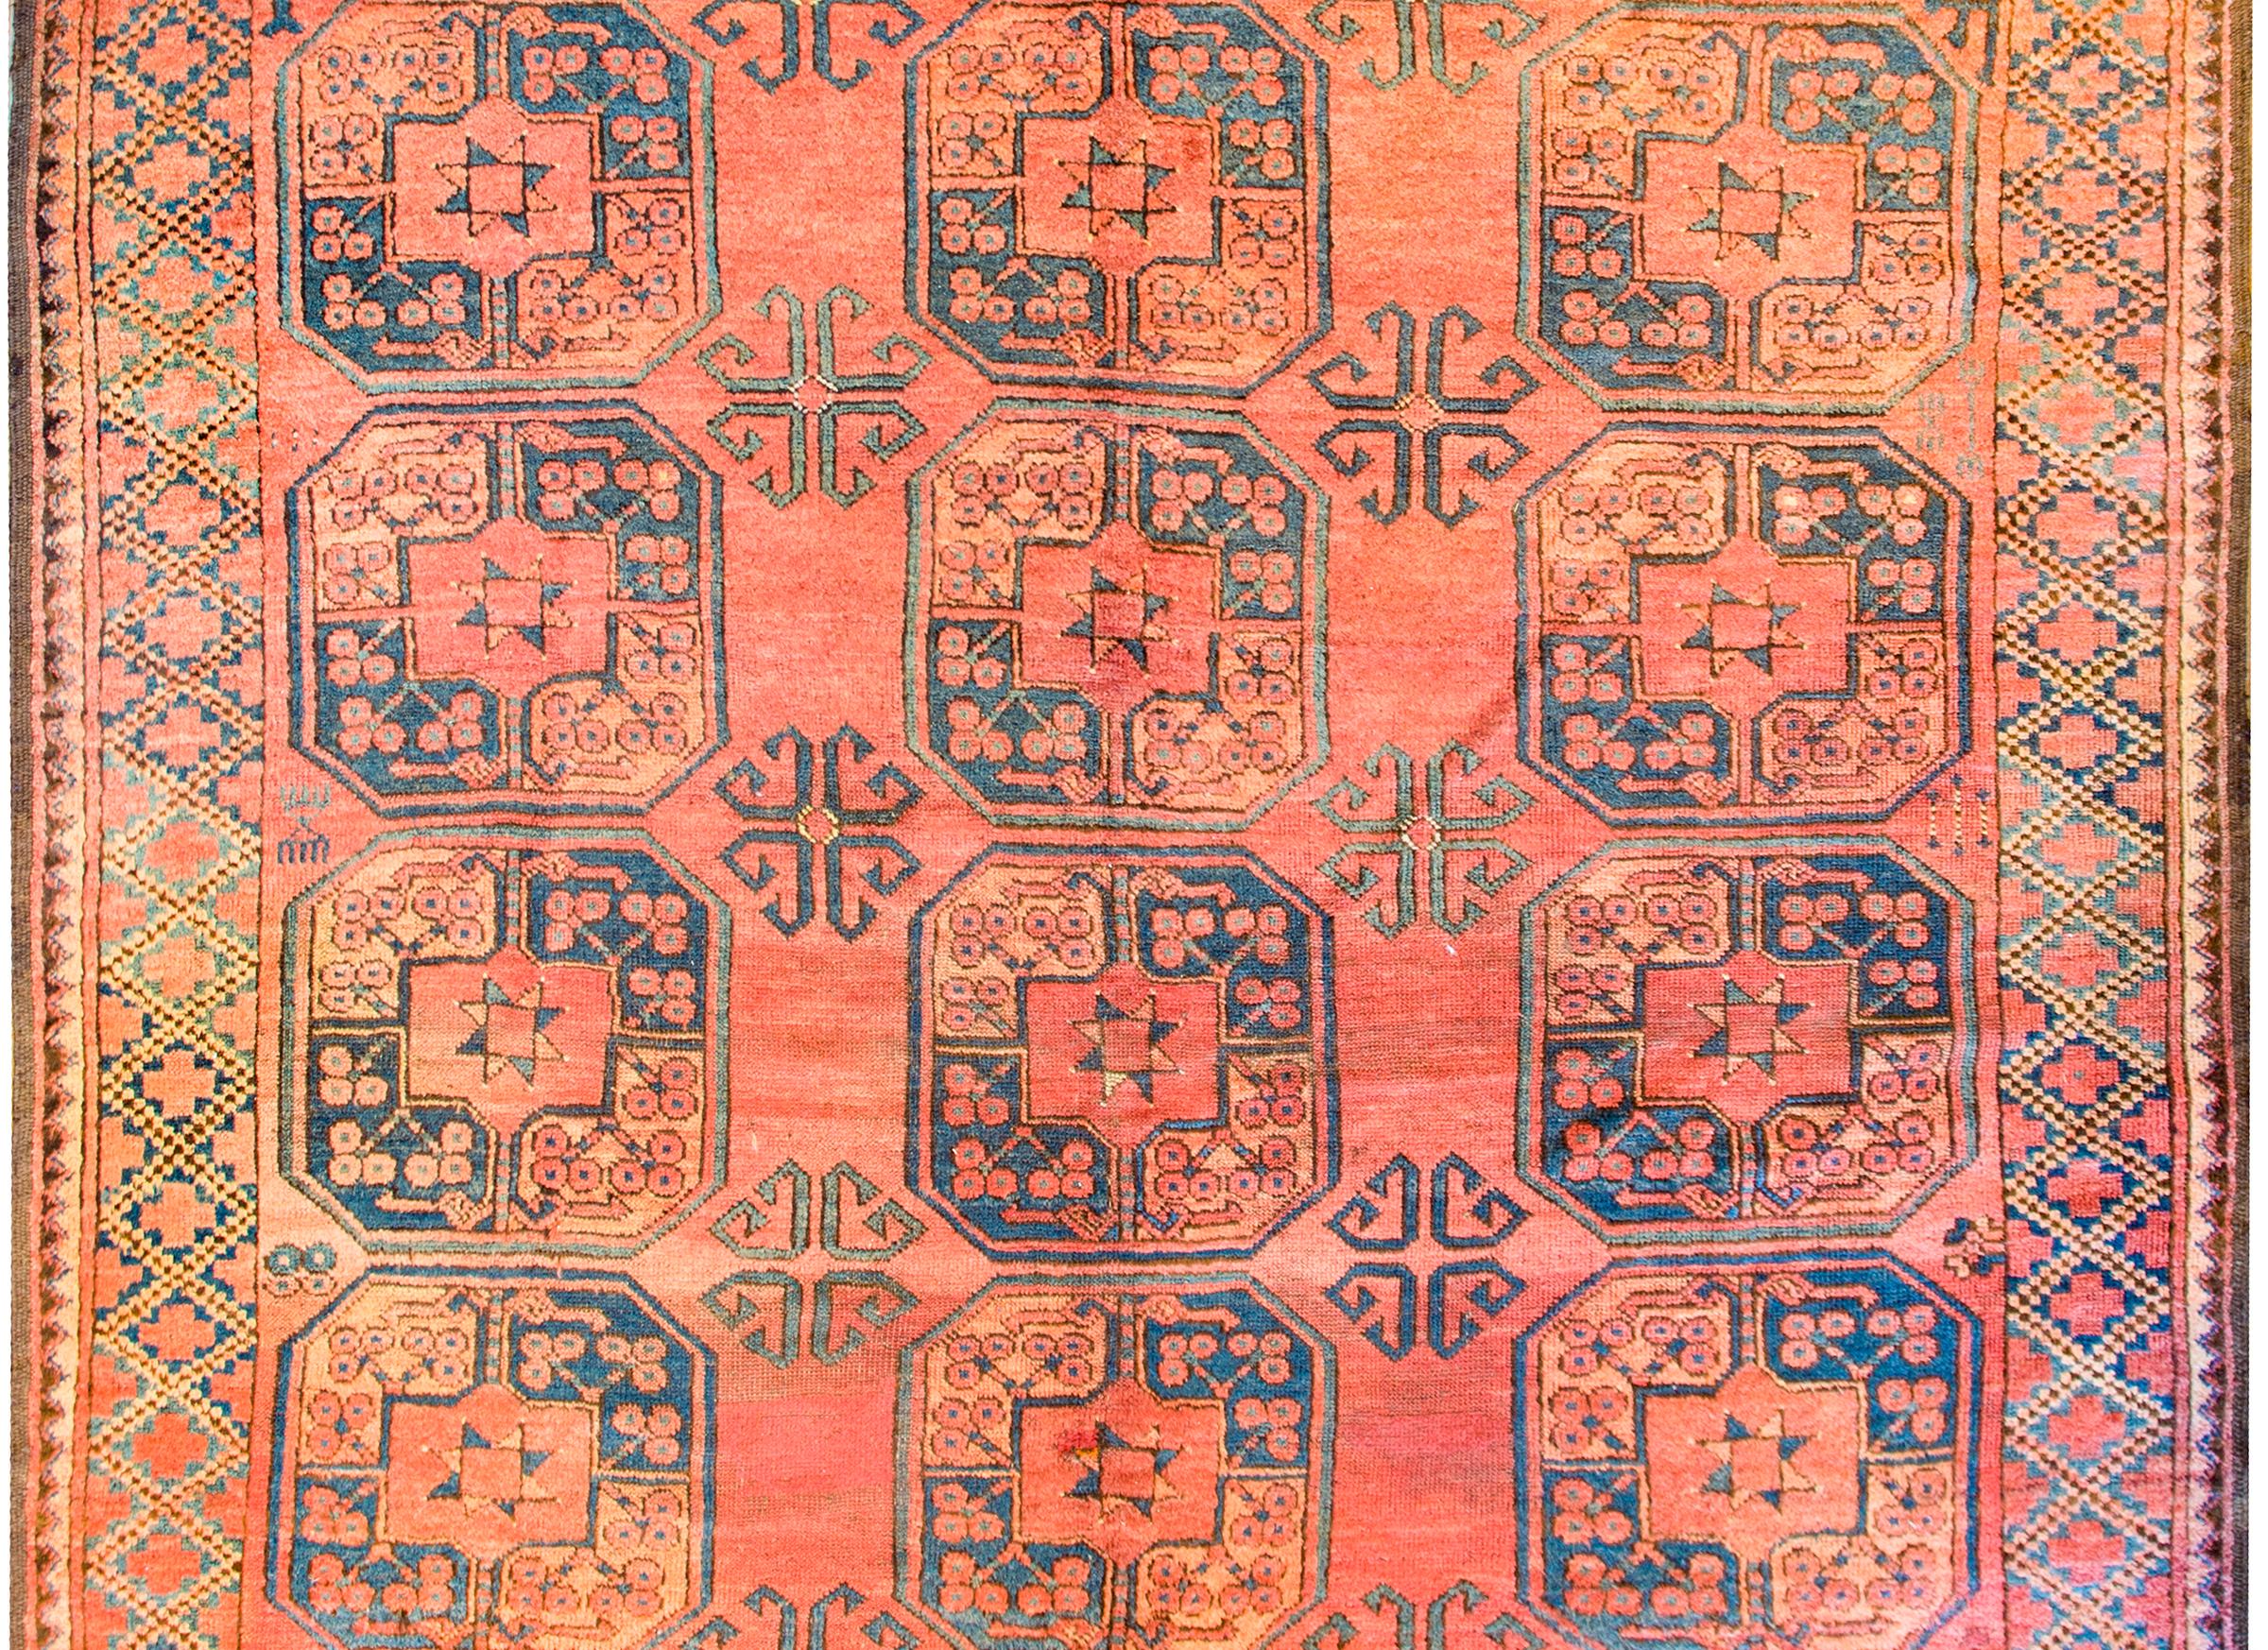 Tapis Afghani Bashir du début du 20ème siècle avec de multiples grands médaillons octogonaux tissés en indigo et or, sur un fond orange entouré d'une bordure à motif de treillis géométrique complémentaire.